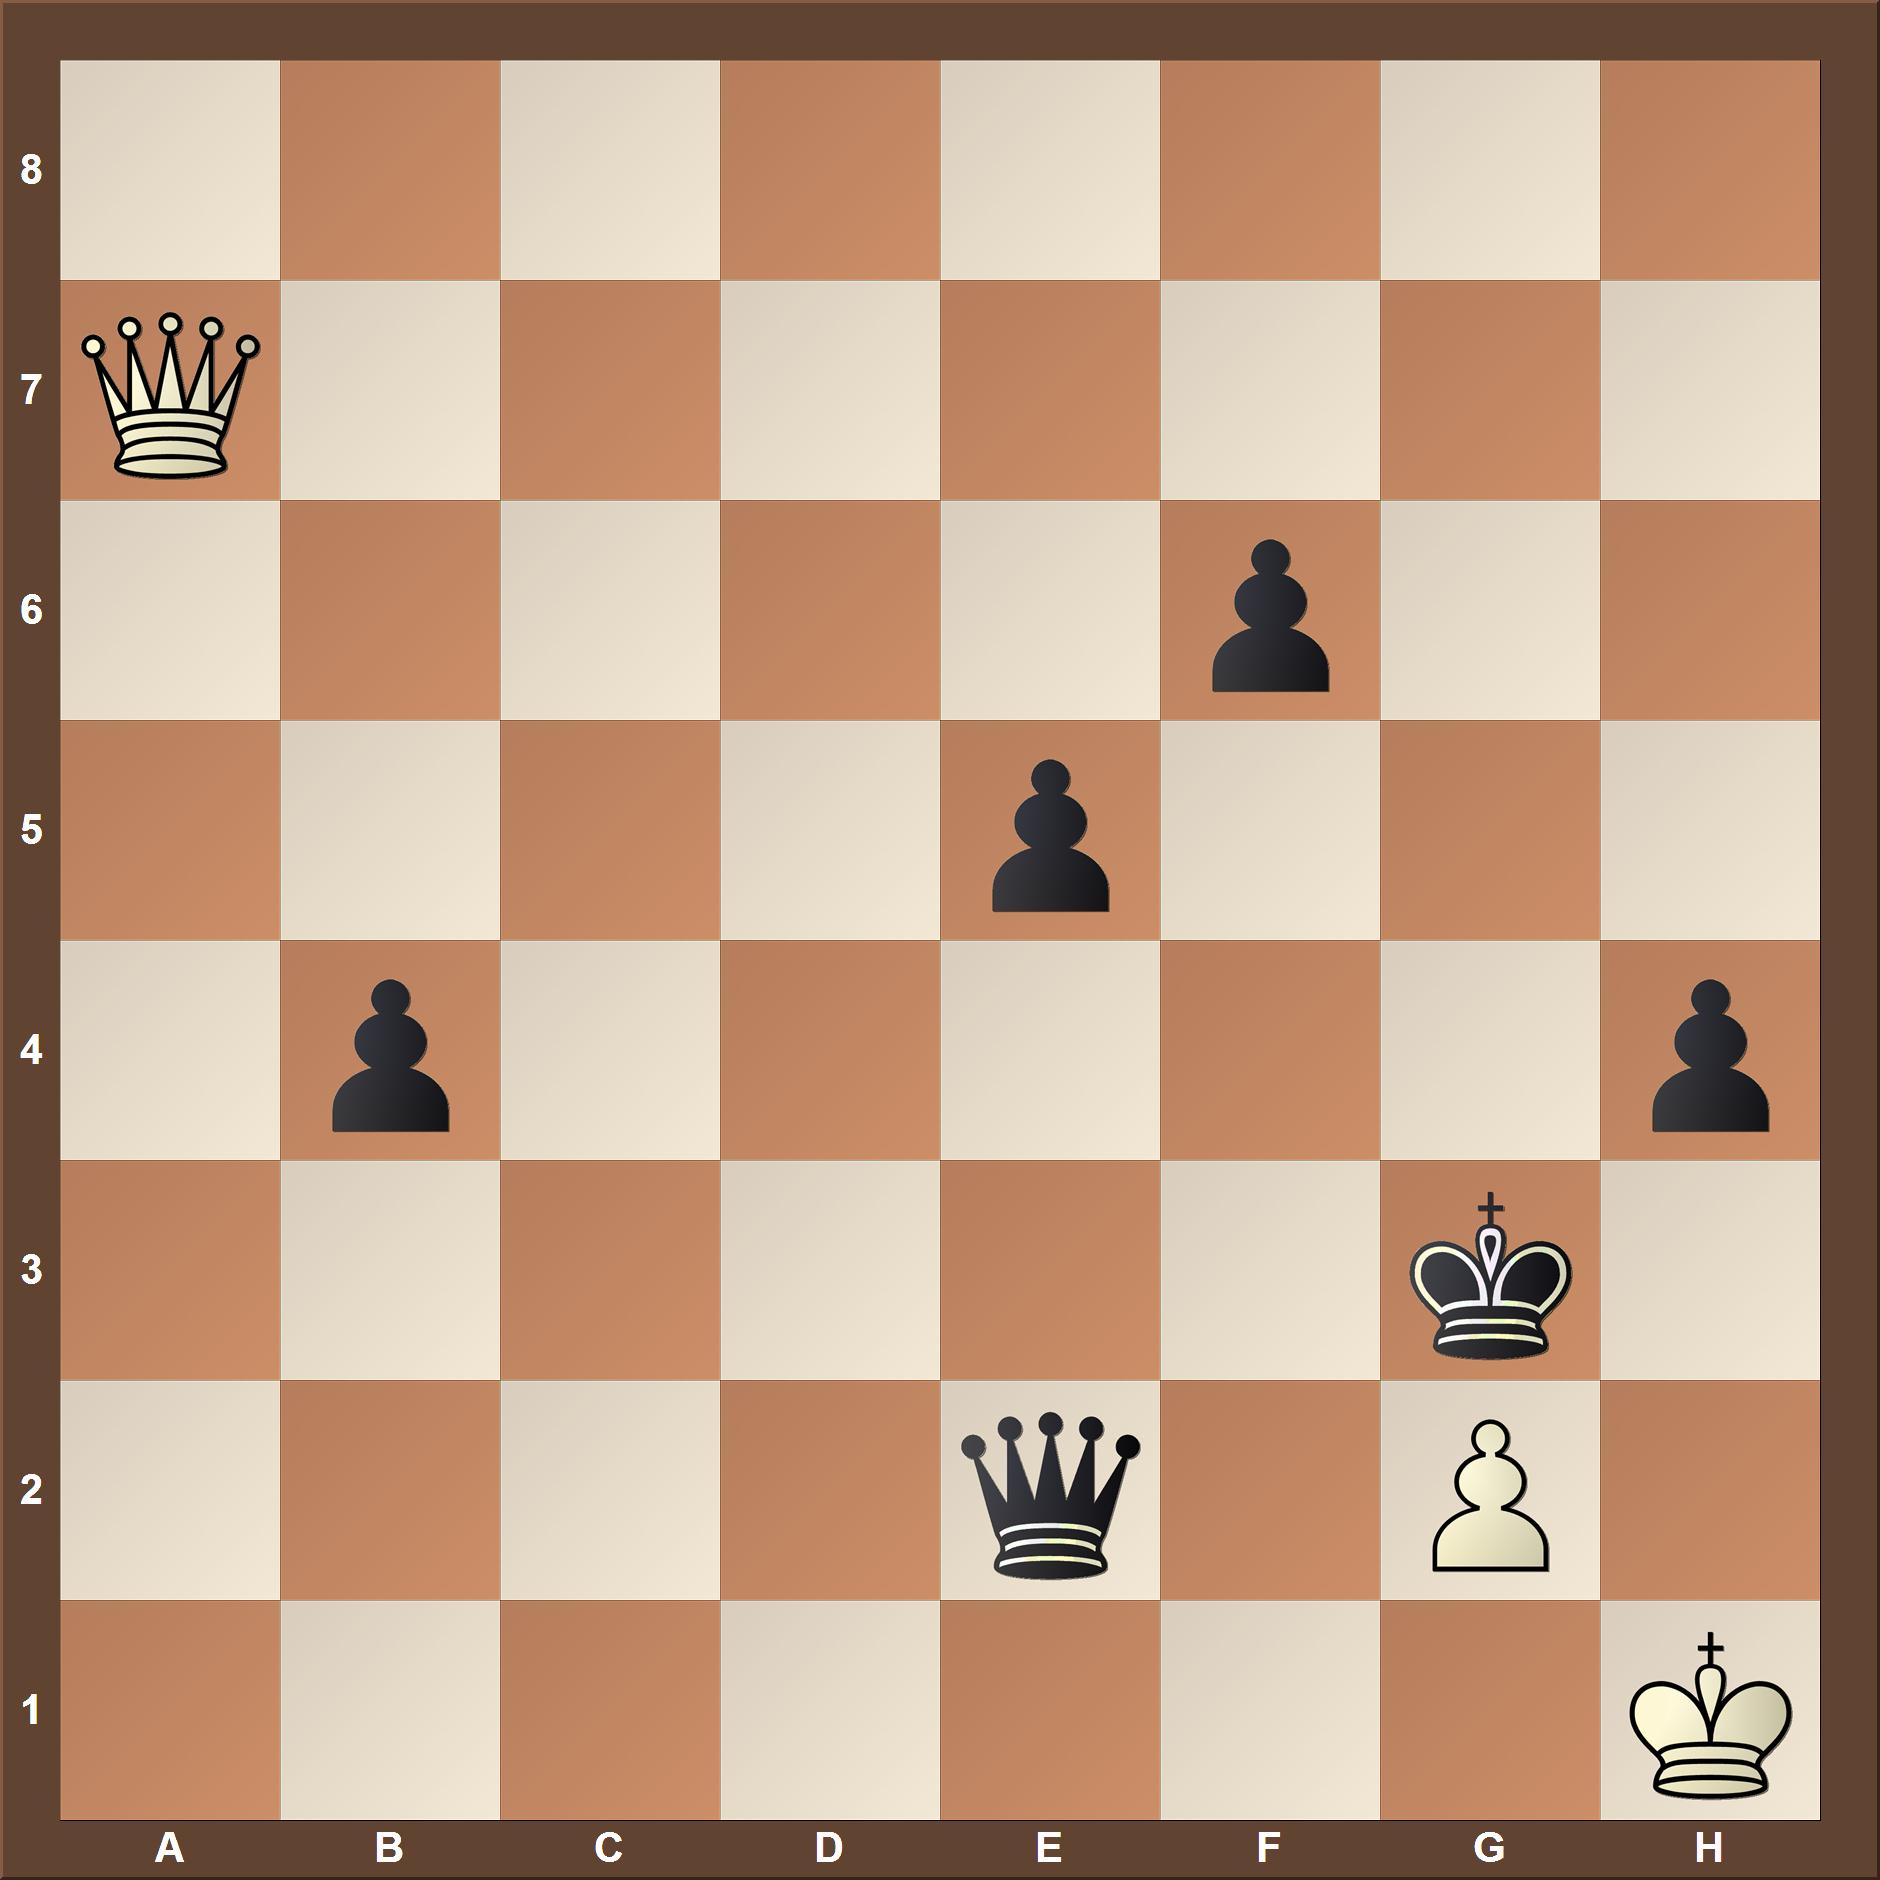 Elo 1200-1400 chess tactics